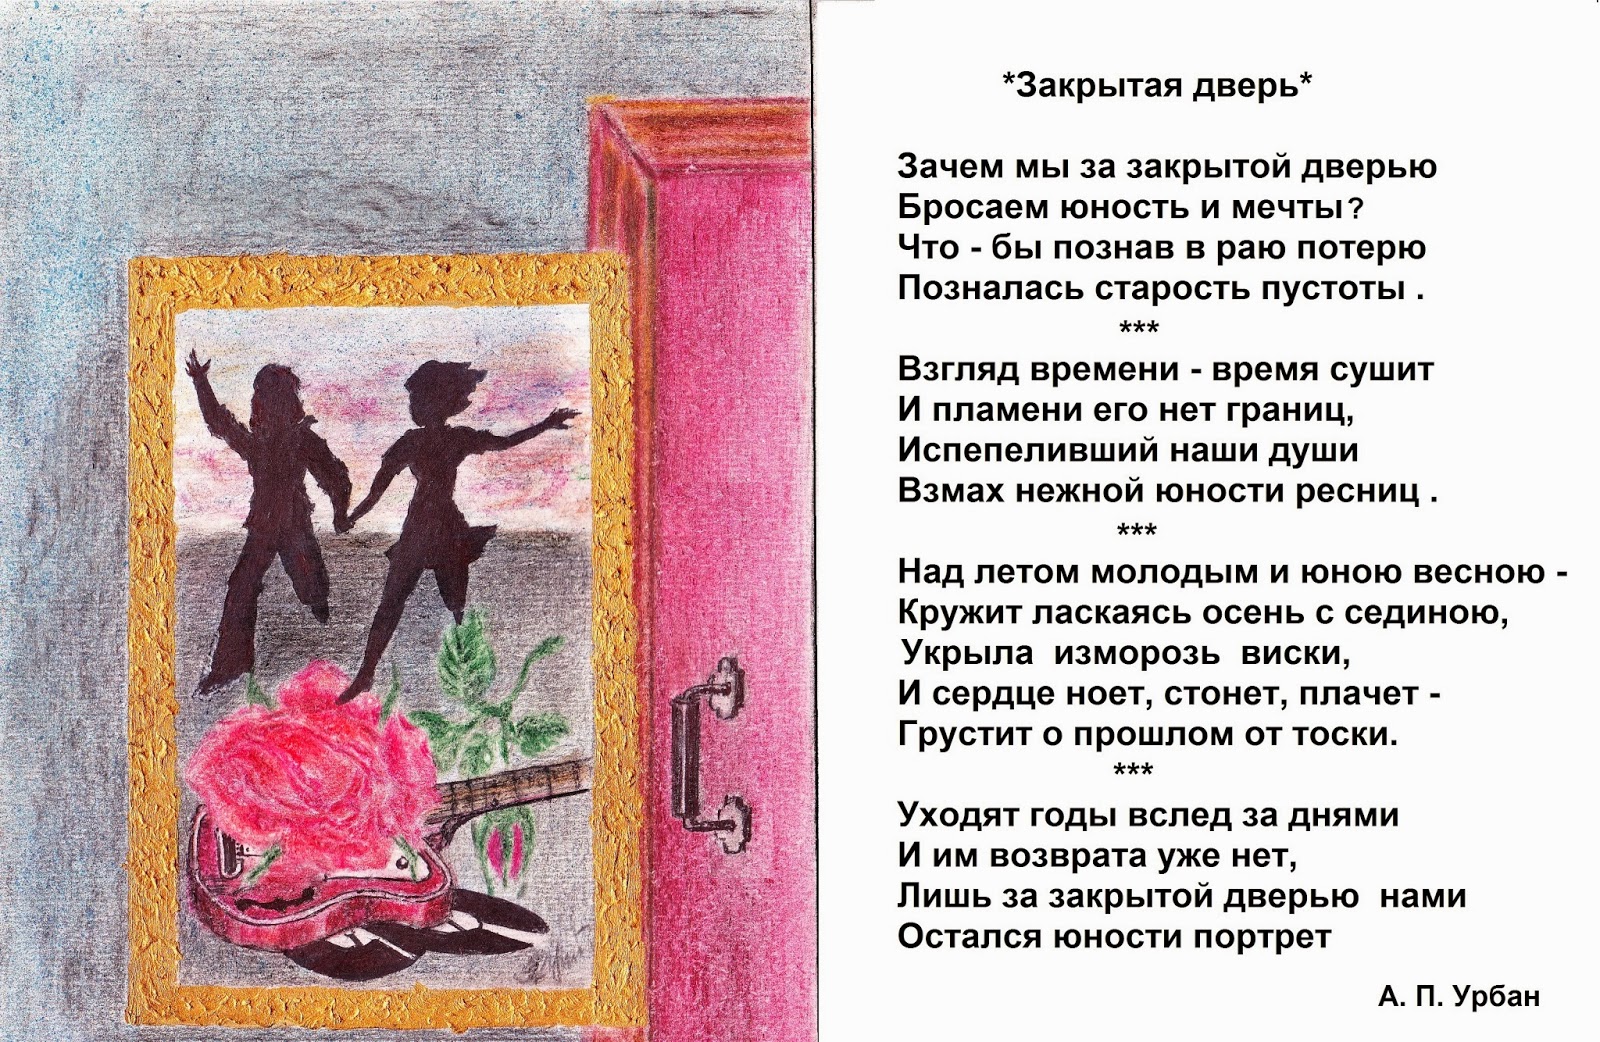 Закрой дверь. Мечты юности. Ваня Дмитриенко стих закрытая дверь.